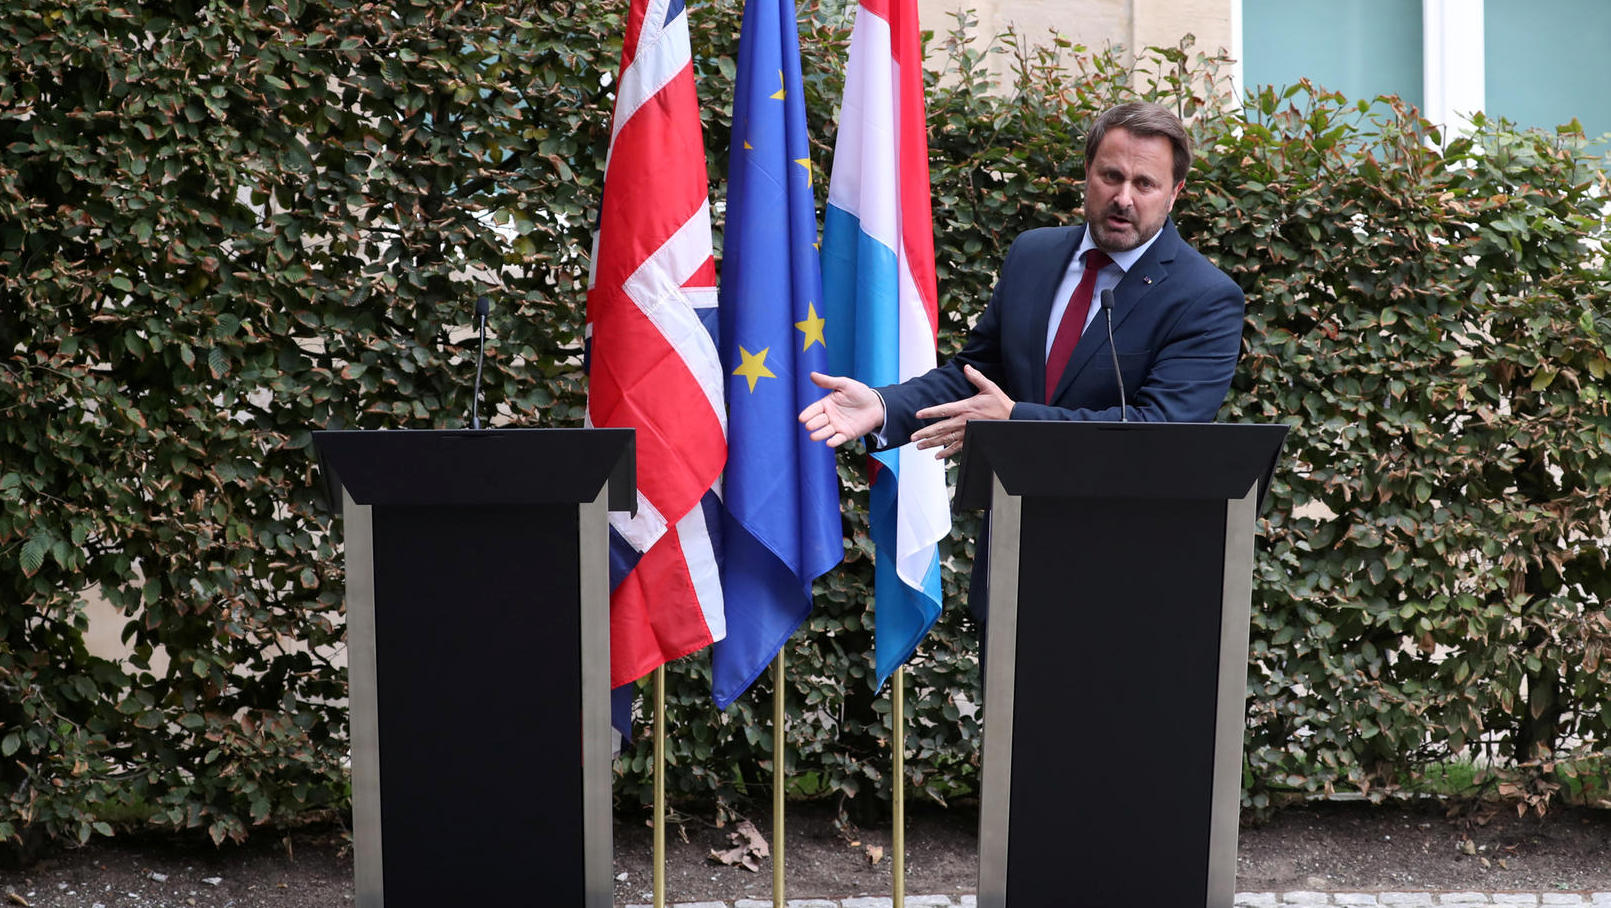 luxemburgs-premierminister-xavier-bettel-neben-ihm-haette-eigentlich-boris-johnson-stehen-sollen-